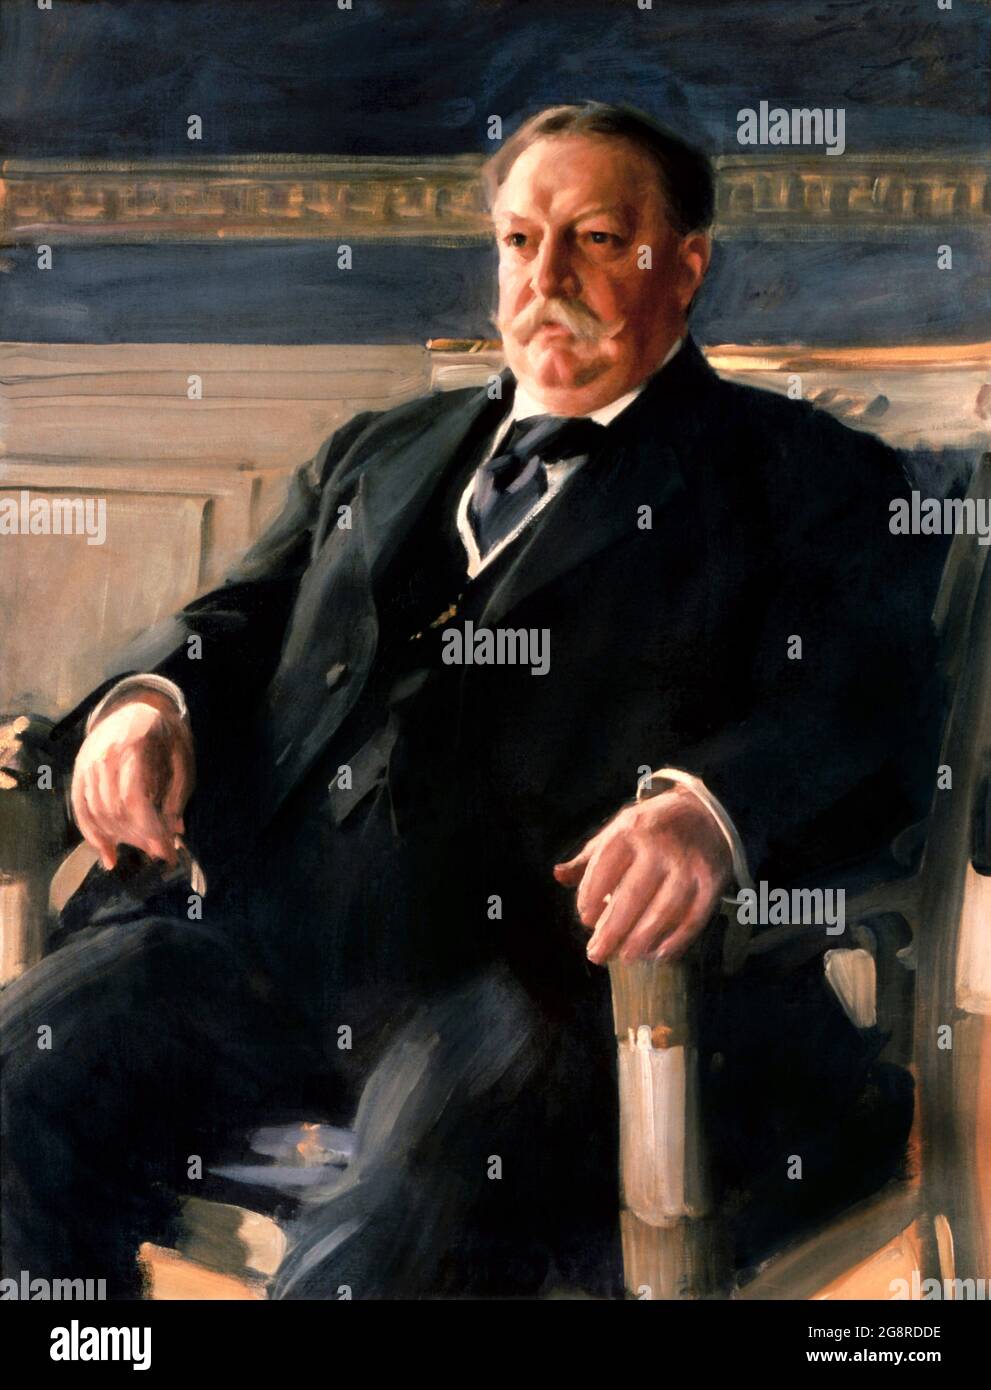 William Howard Taft. Porträt des 27. Präsidenten der USA, William Howard Taft (1857-1930) von anders Zorn, Öl auf Leinwand, 1911 Stockfoto